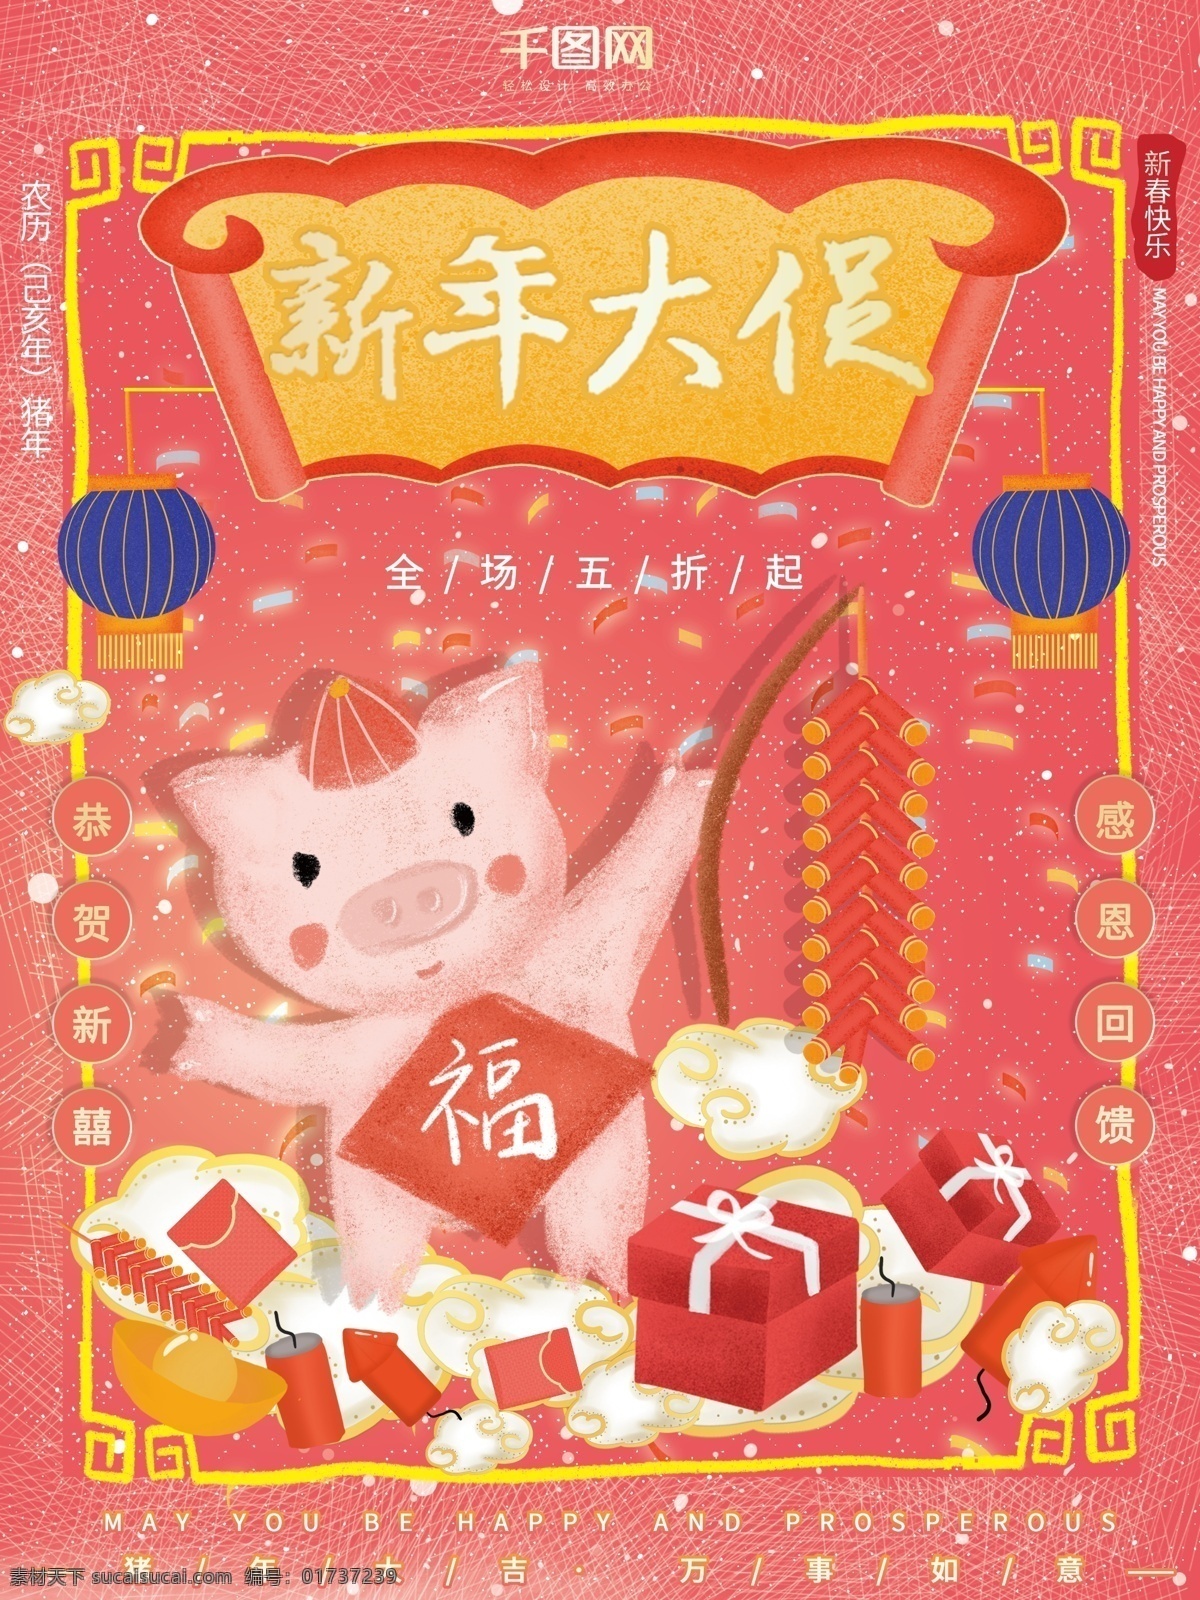 原创 插画 中国 风 复古 新年 大 促 猪年 促销 海报 插画海报 新年促销 新年大促 促销海报 年货海报 猪年海报